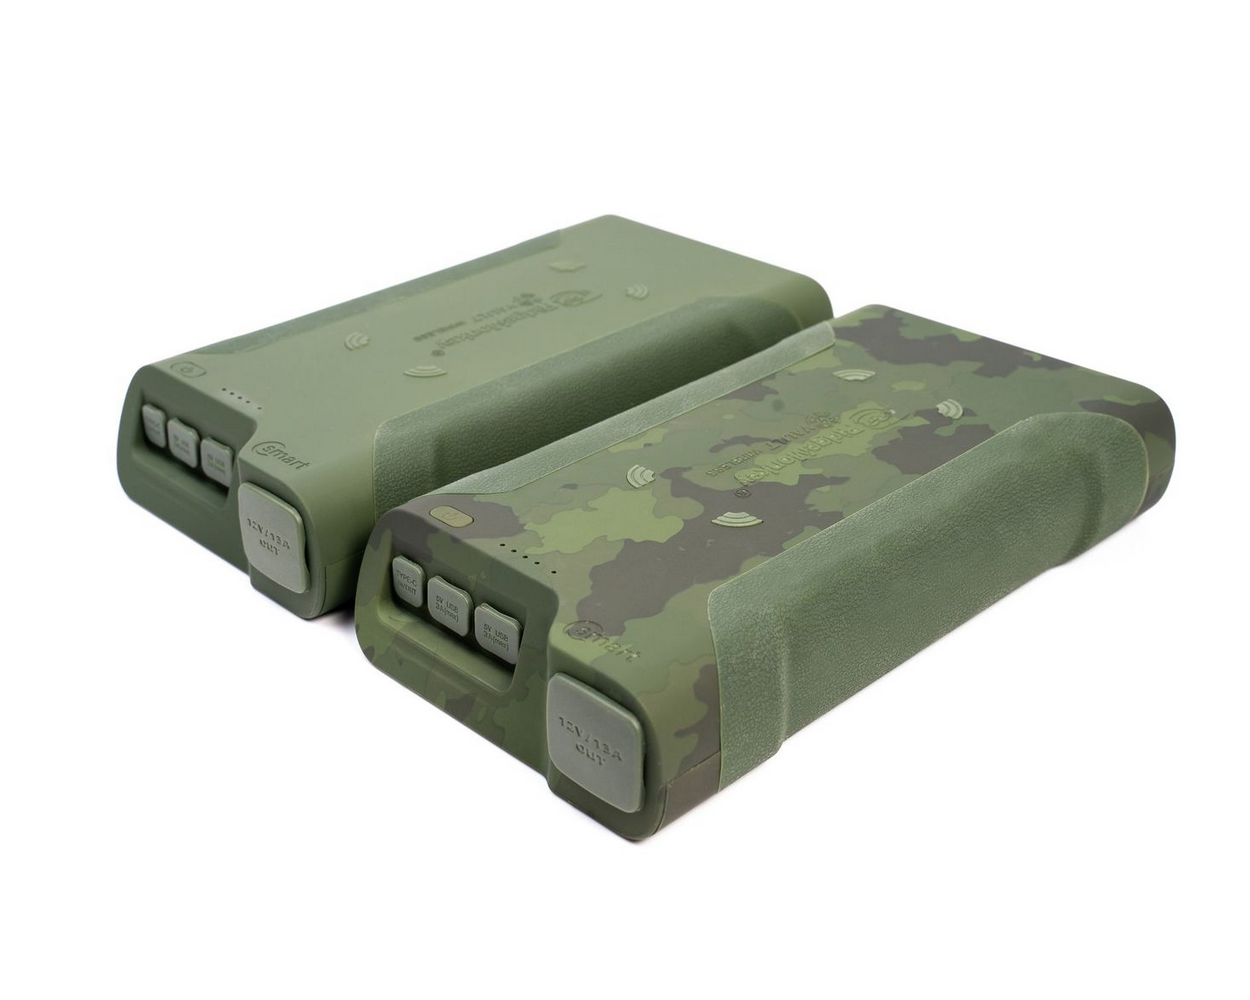 Green or Camo In Stock Ridgemonkey C-Smart 42150mAh Wireless Vault Power Pack 